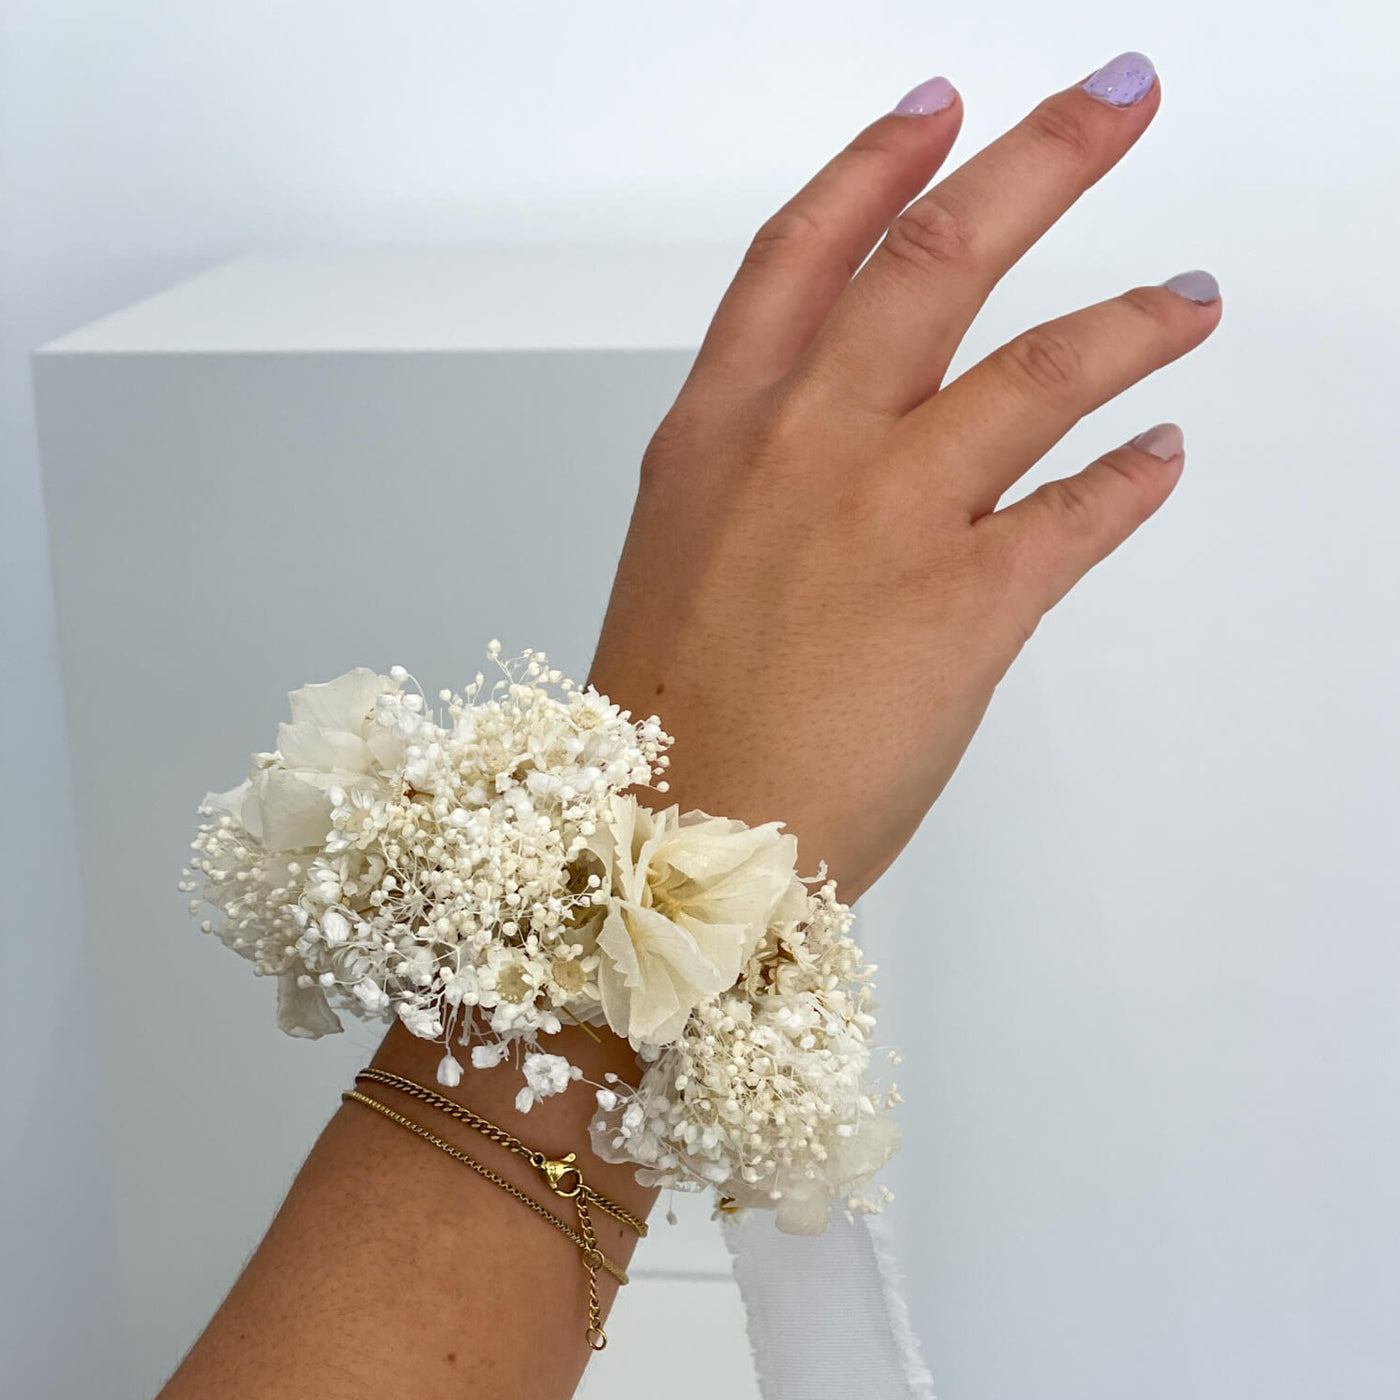 Armband Trockenblumen weiße Hortensie